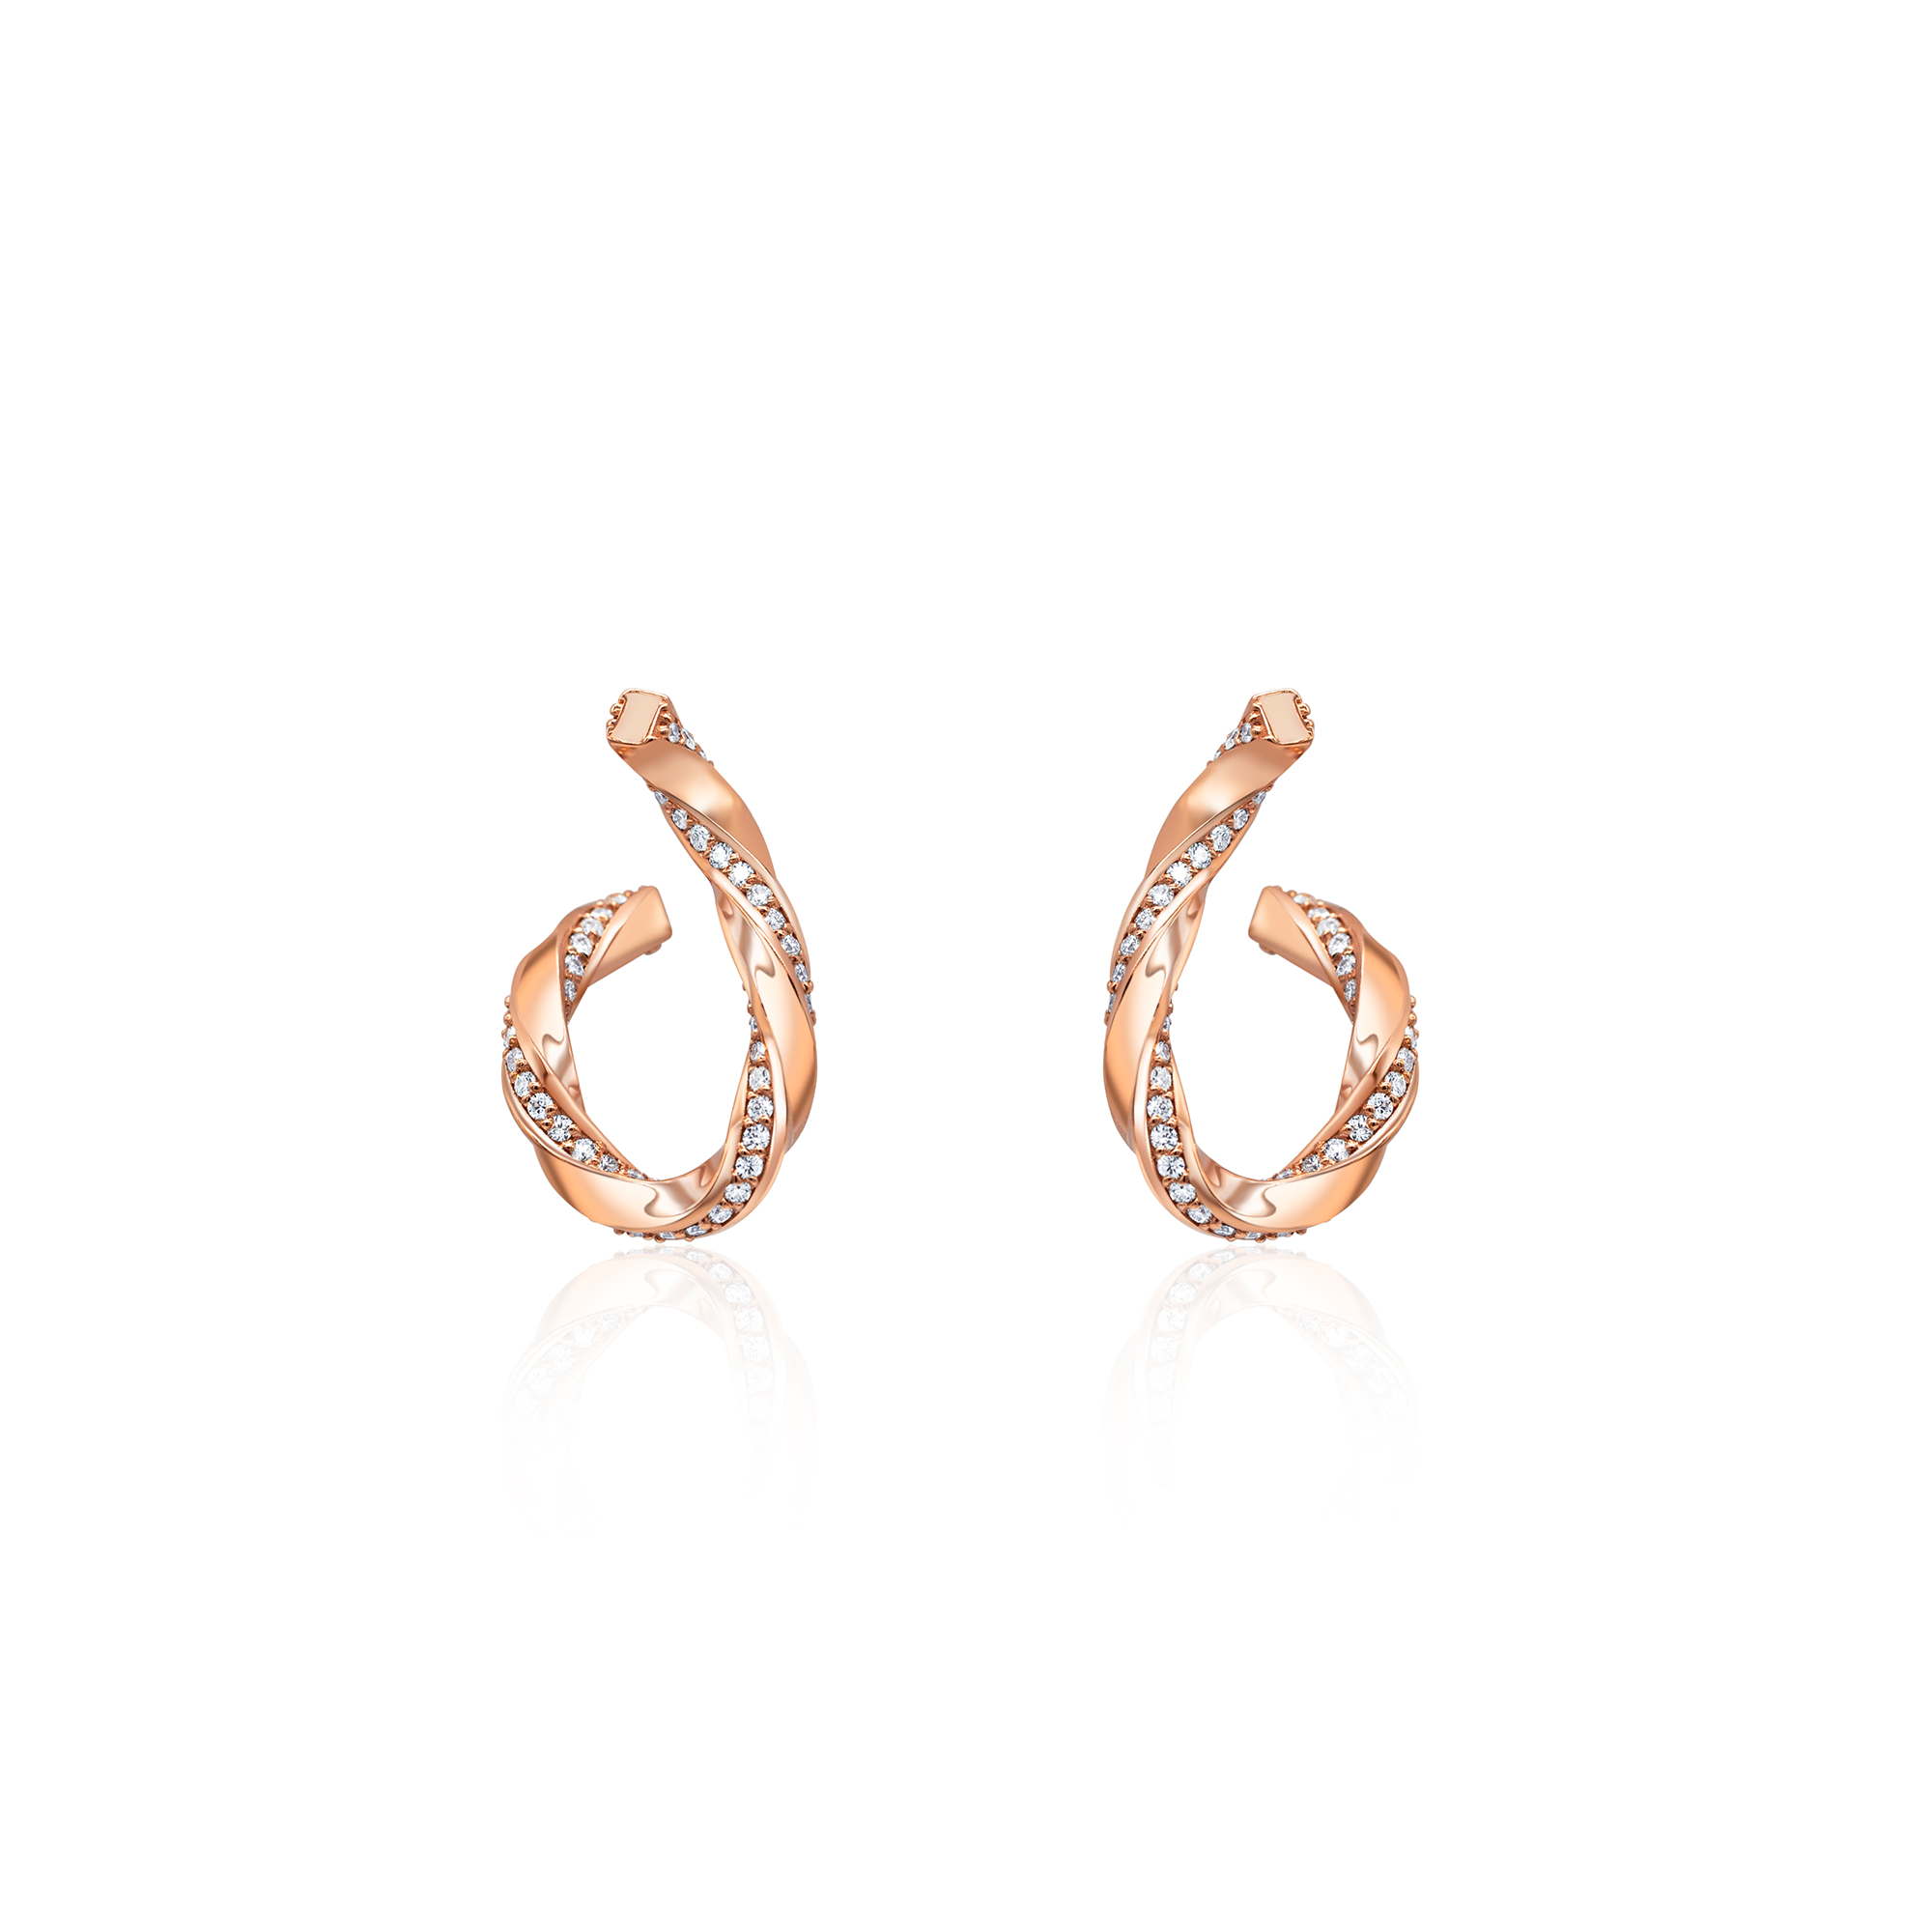 14K yellow gold diamond earrings eternity earrings wedding jewelry